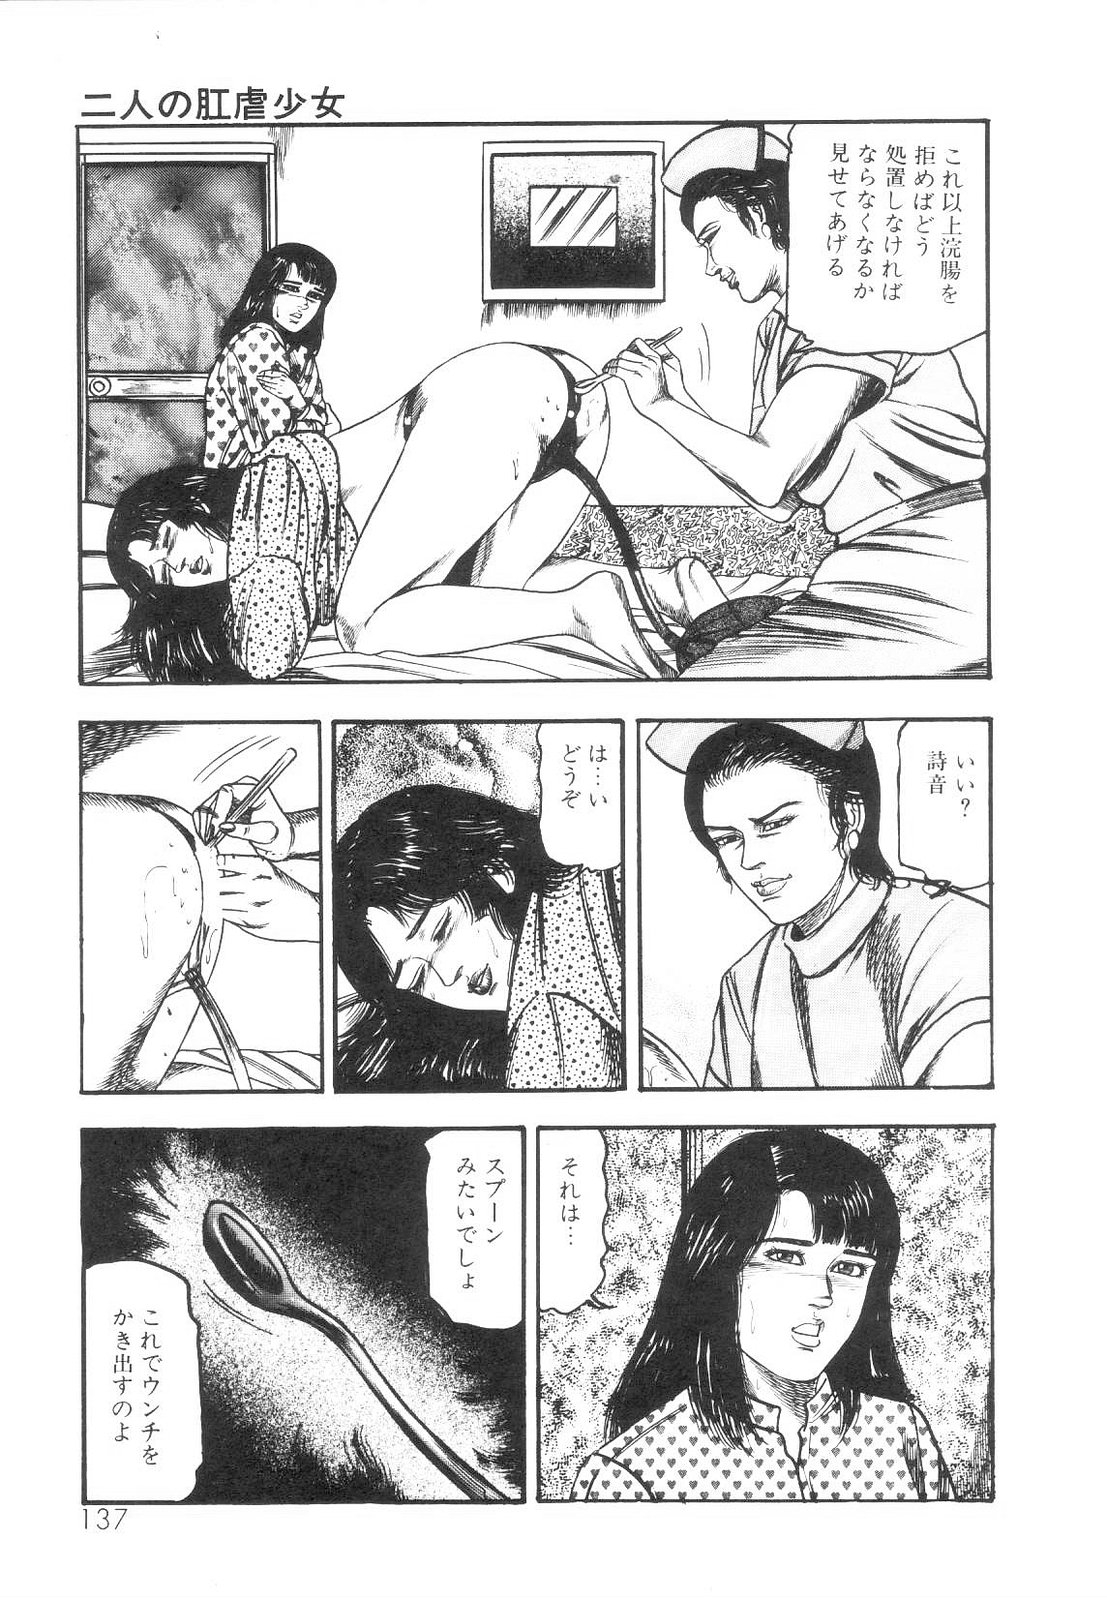 [Sanjou Tomomi] Shiro no Mokushiroku Vol. 1 - Sei Shojo Shion no Shou 137